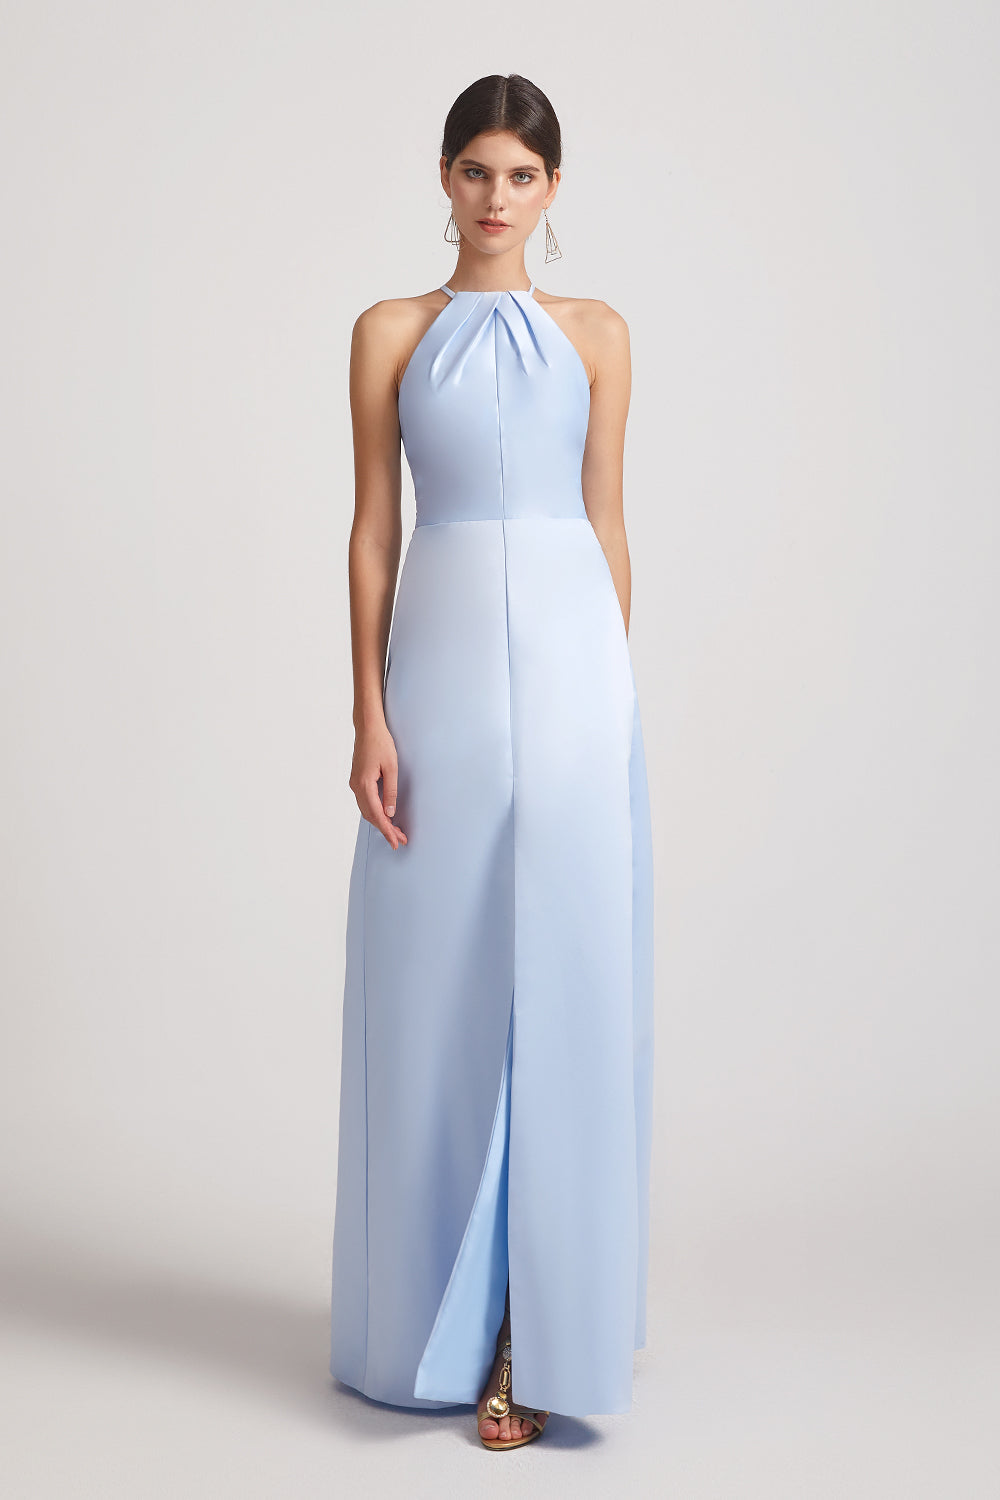 light blue satin sleek floor length dresses